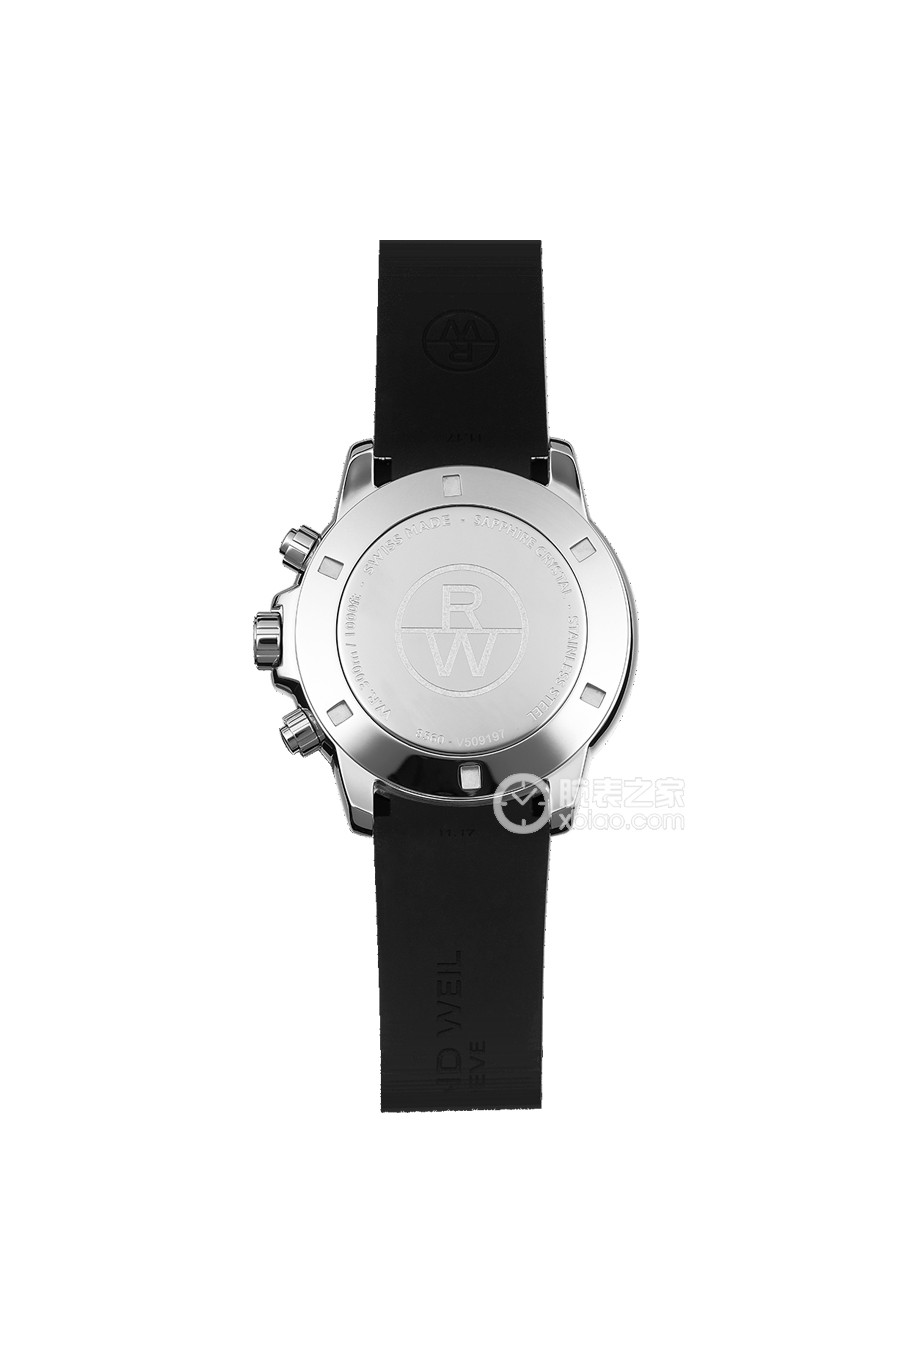 蕾蒙威男装腕表系列8560-SR-00206